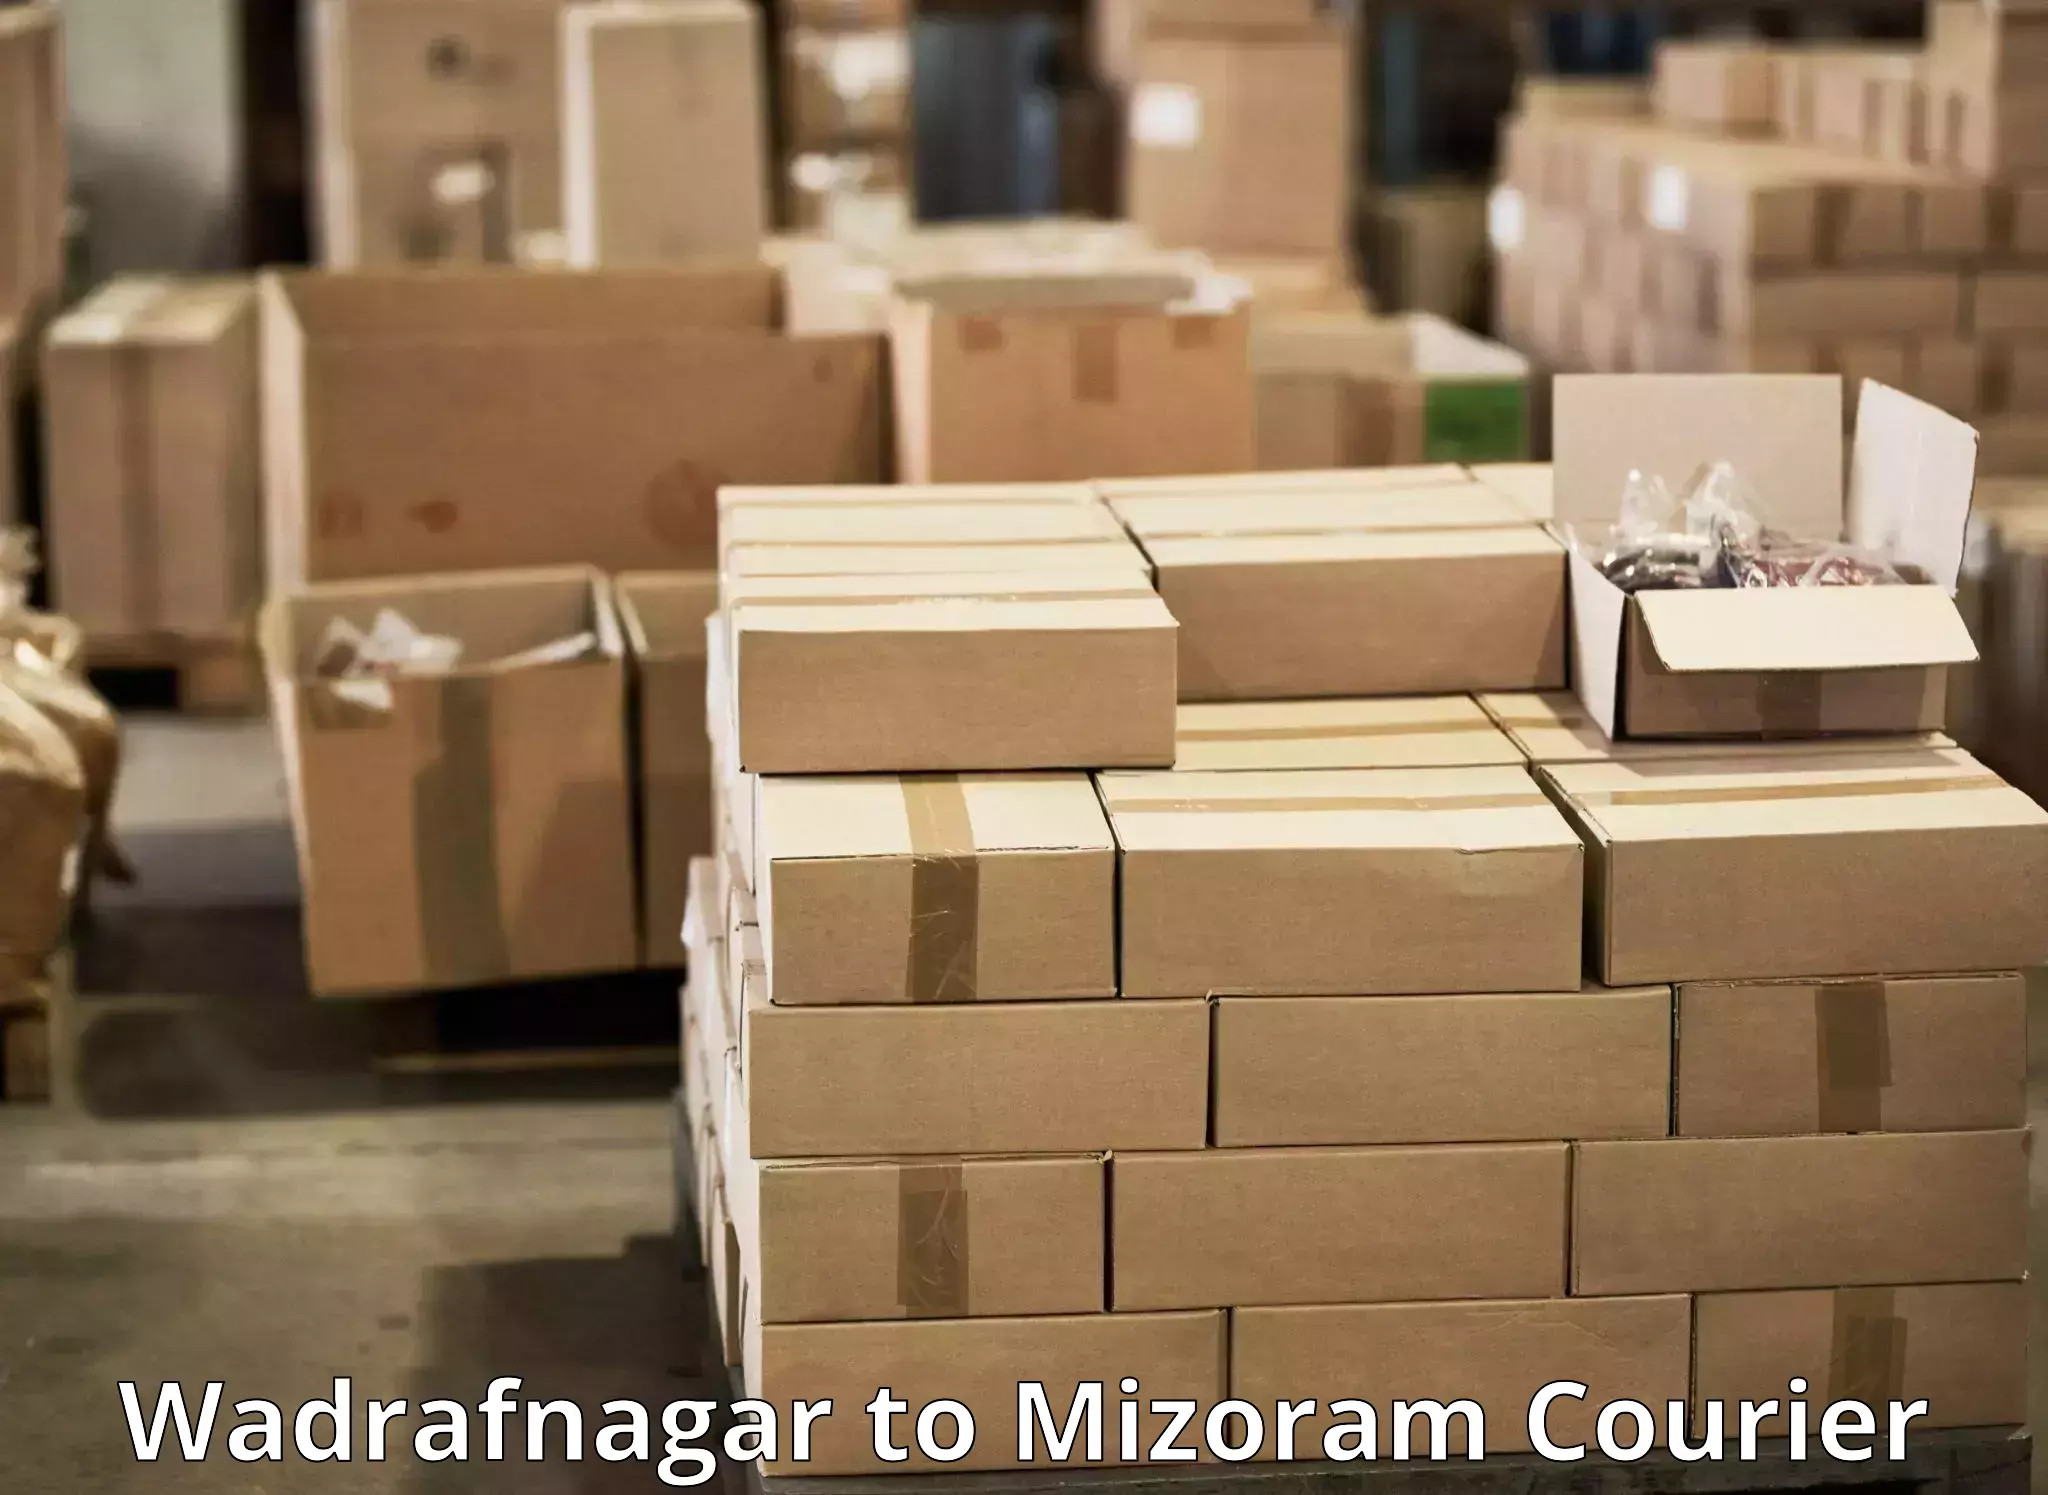 Affordable parcel service Wadrafnagar to Tlabung